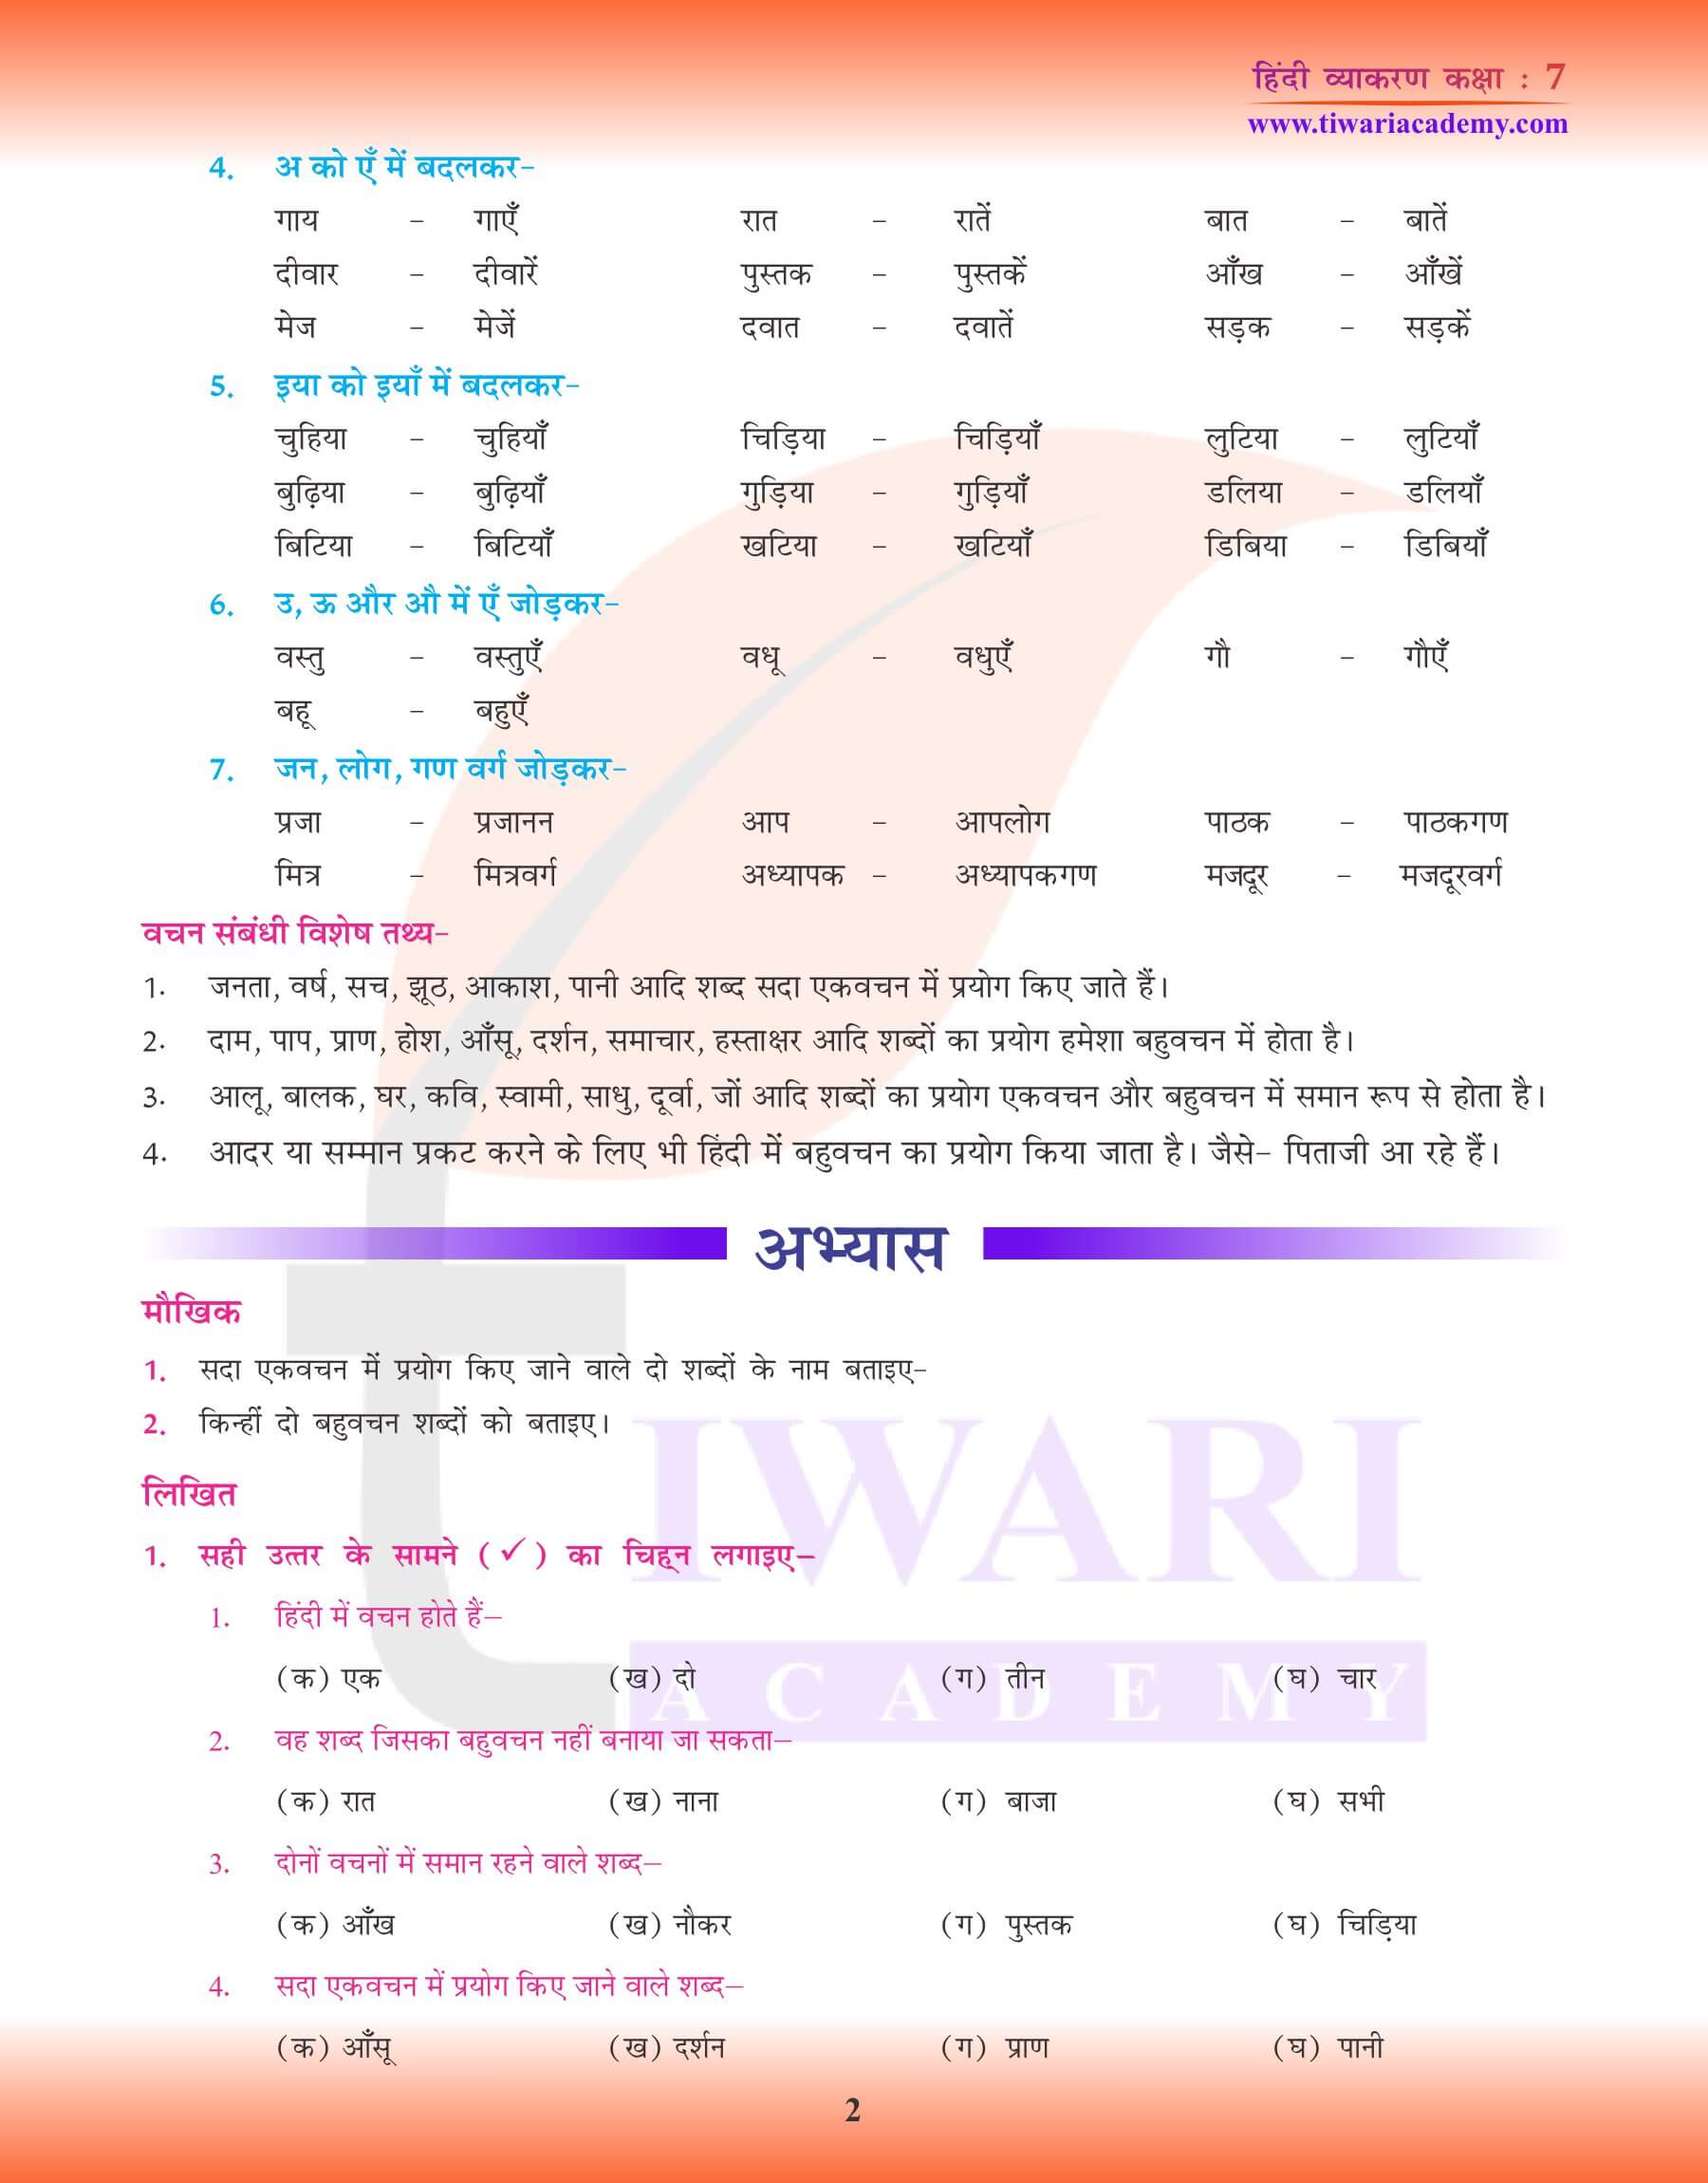 कक्षा 7 हिंदी व्याकरण में वचन